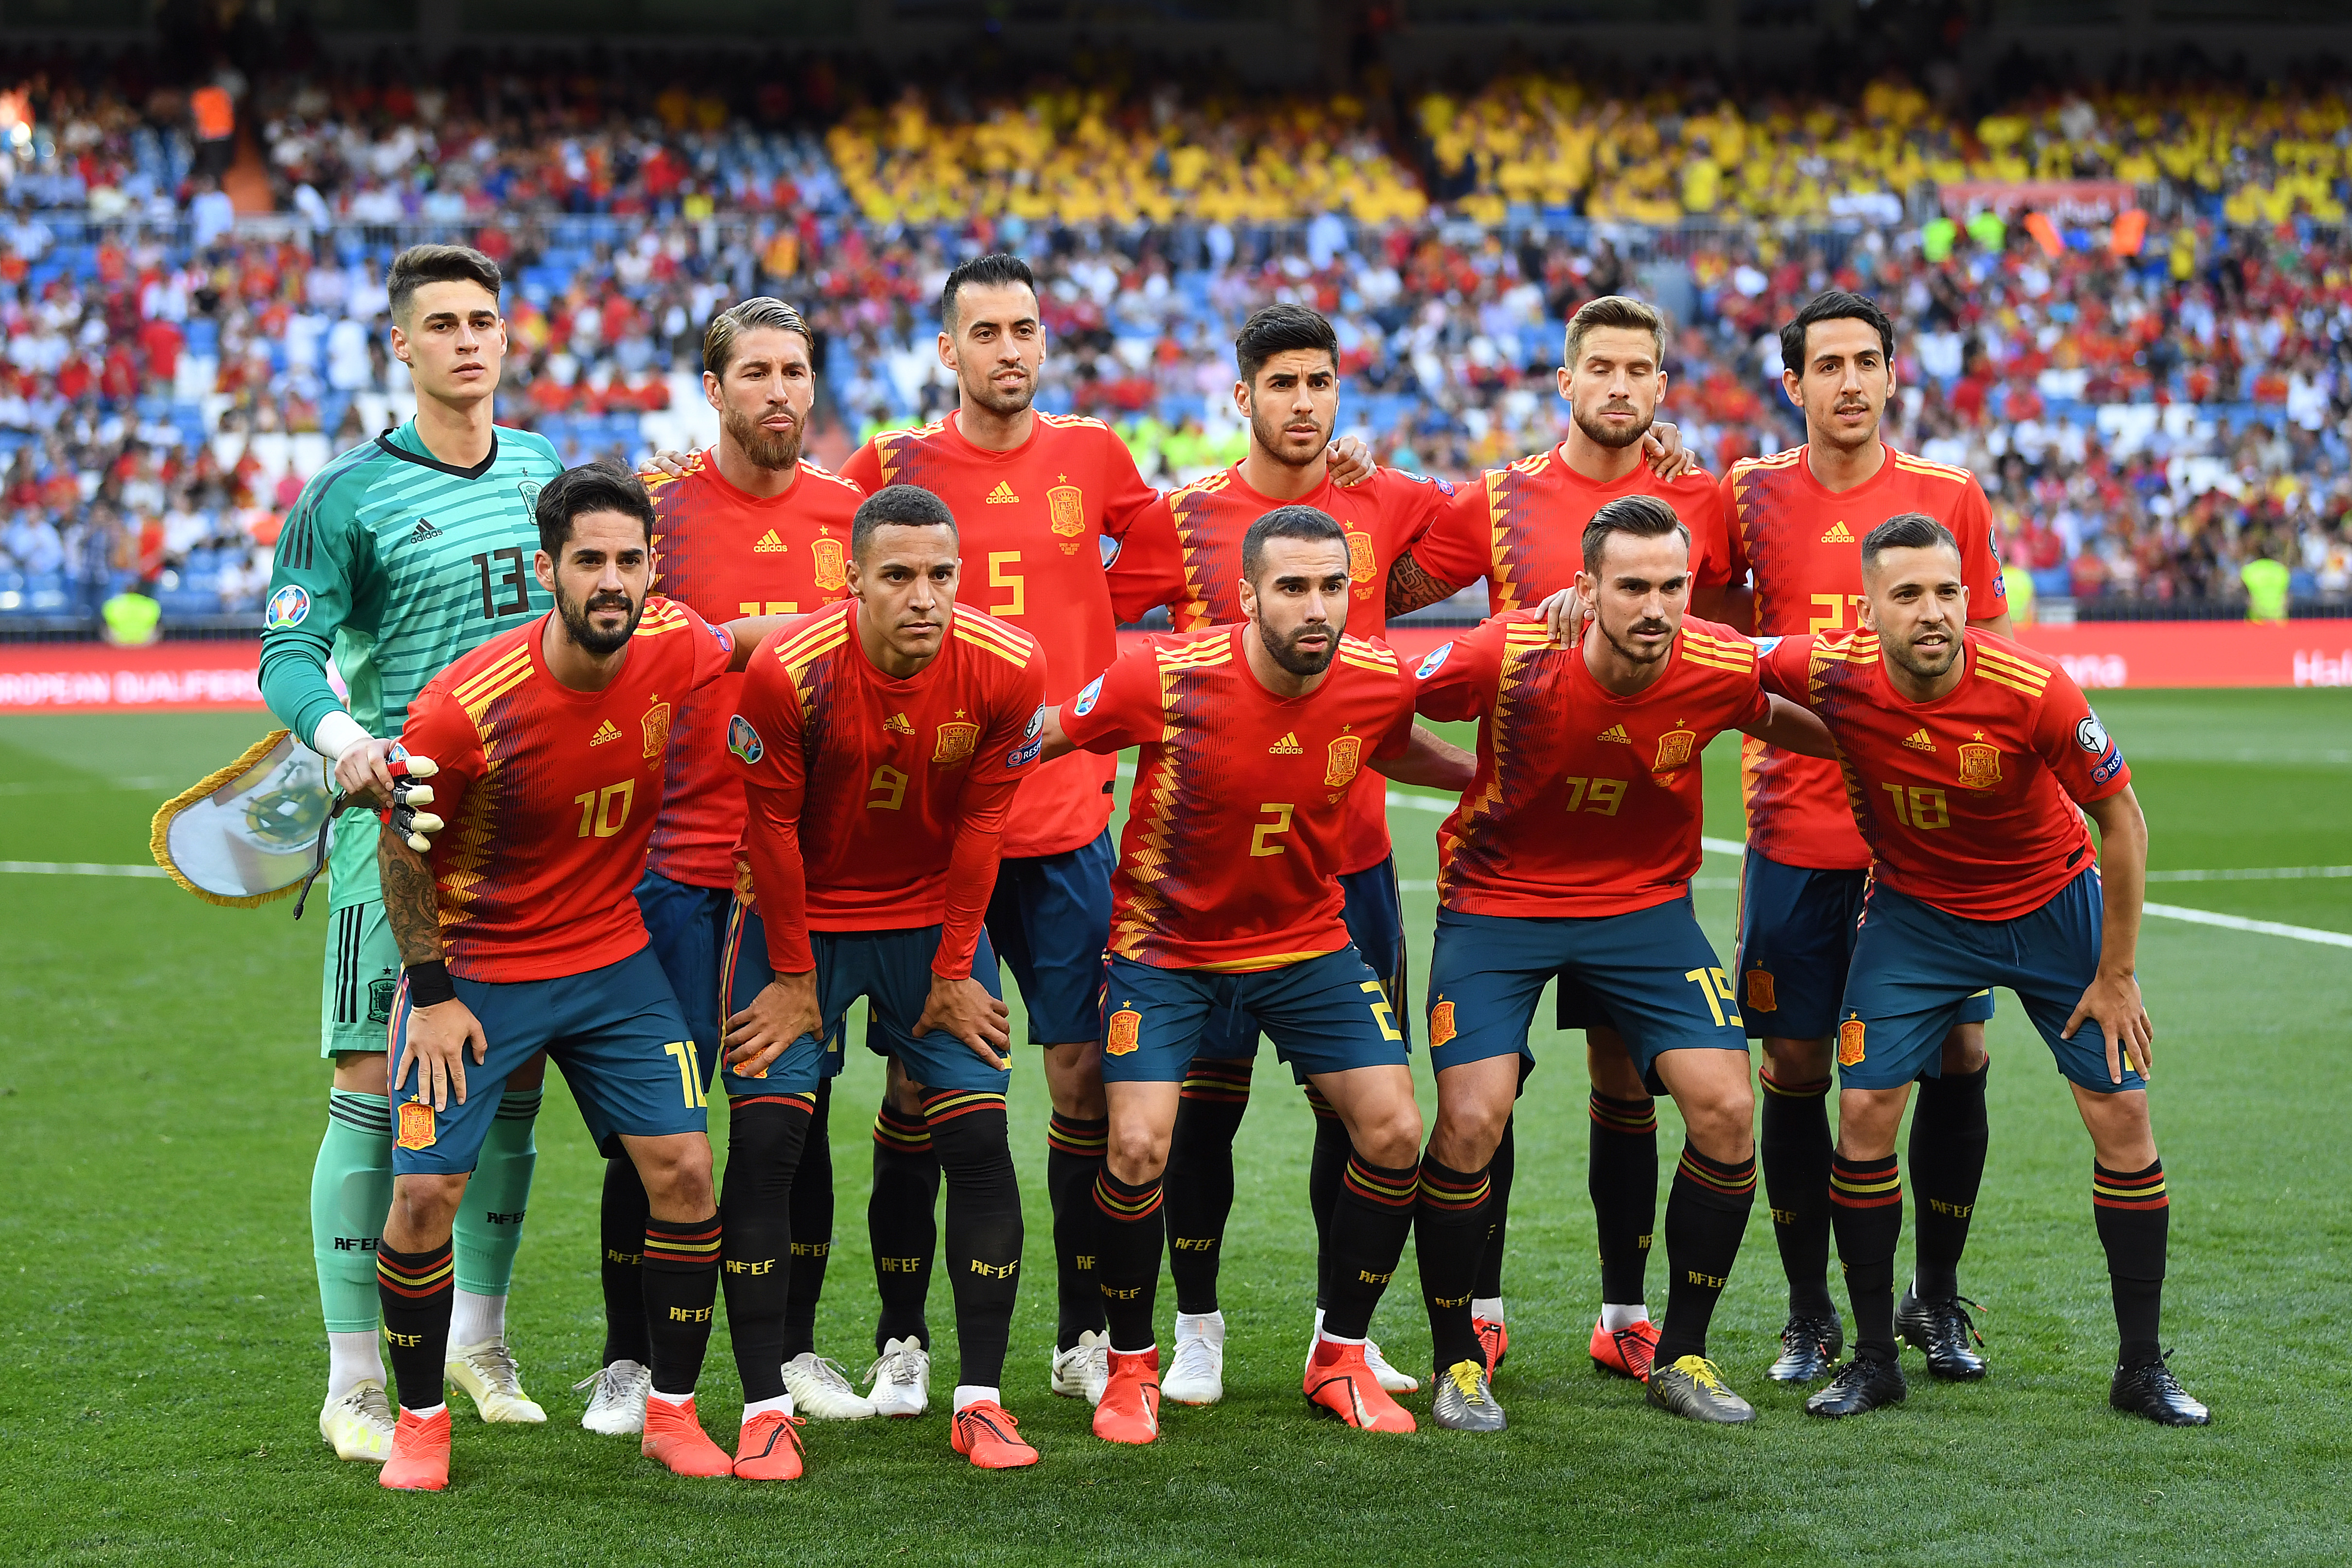 La agenda de la Selección de España: vuelve a jugar y qué partidos habrá en | Fútbol-Addict